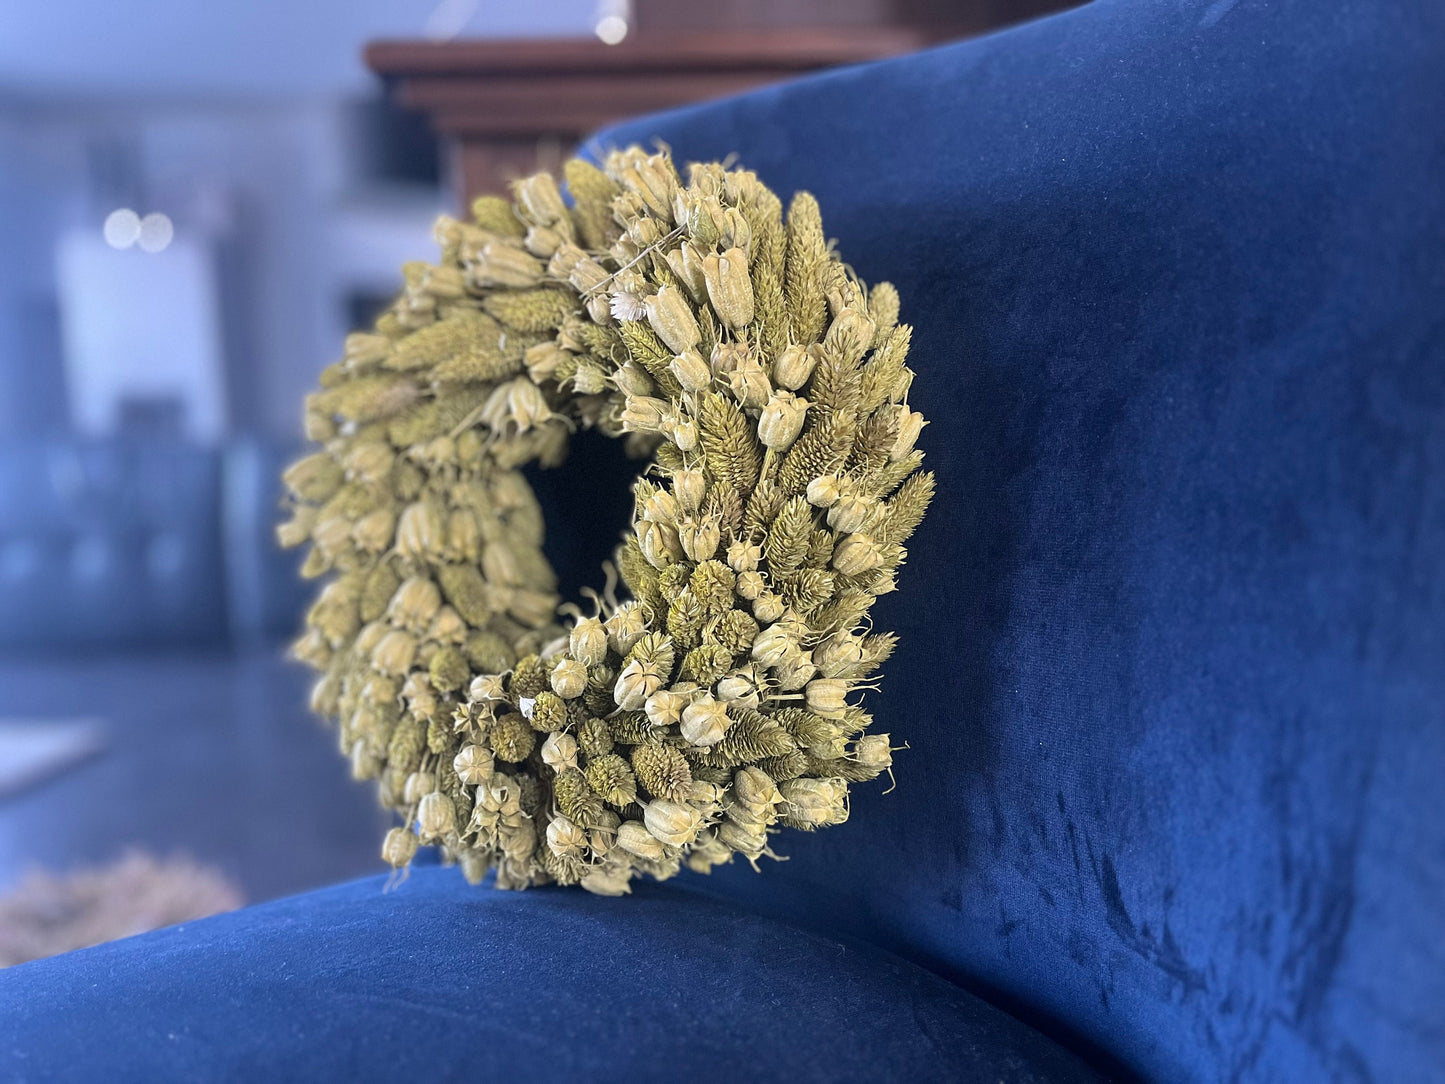 Kranz Frühlingskranz, 28 cm Durchmesser, grün Trockenblumen